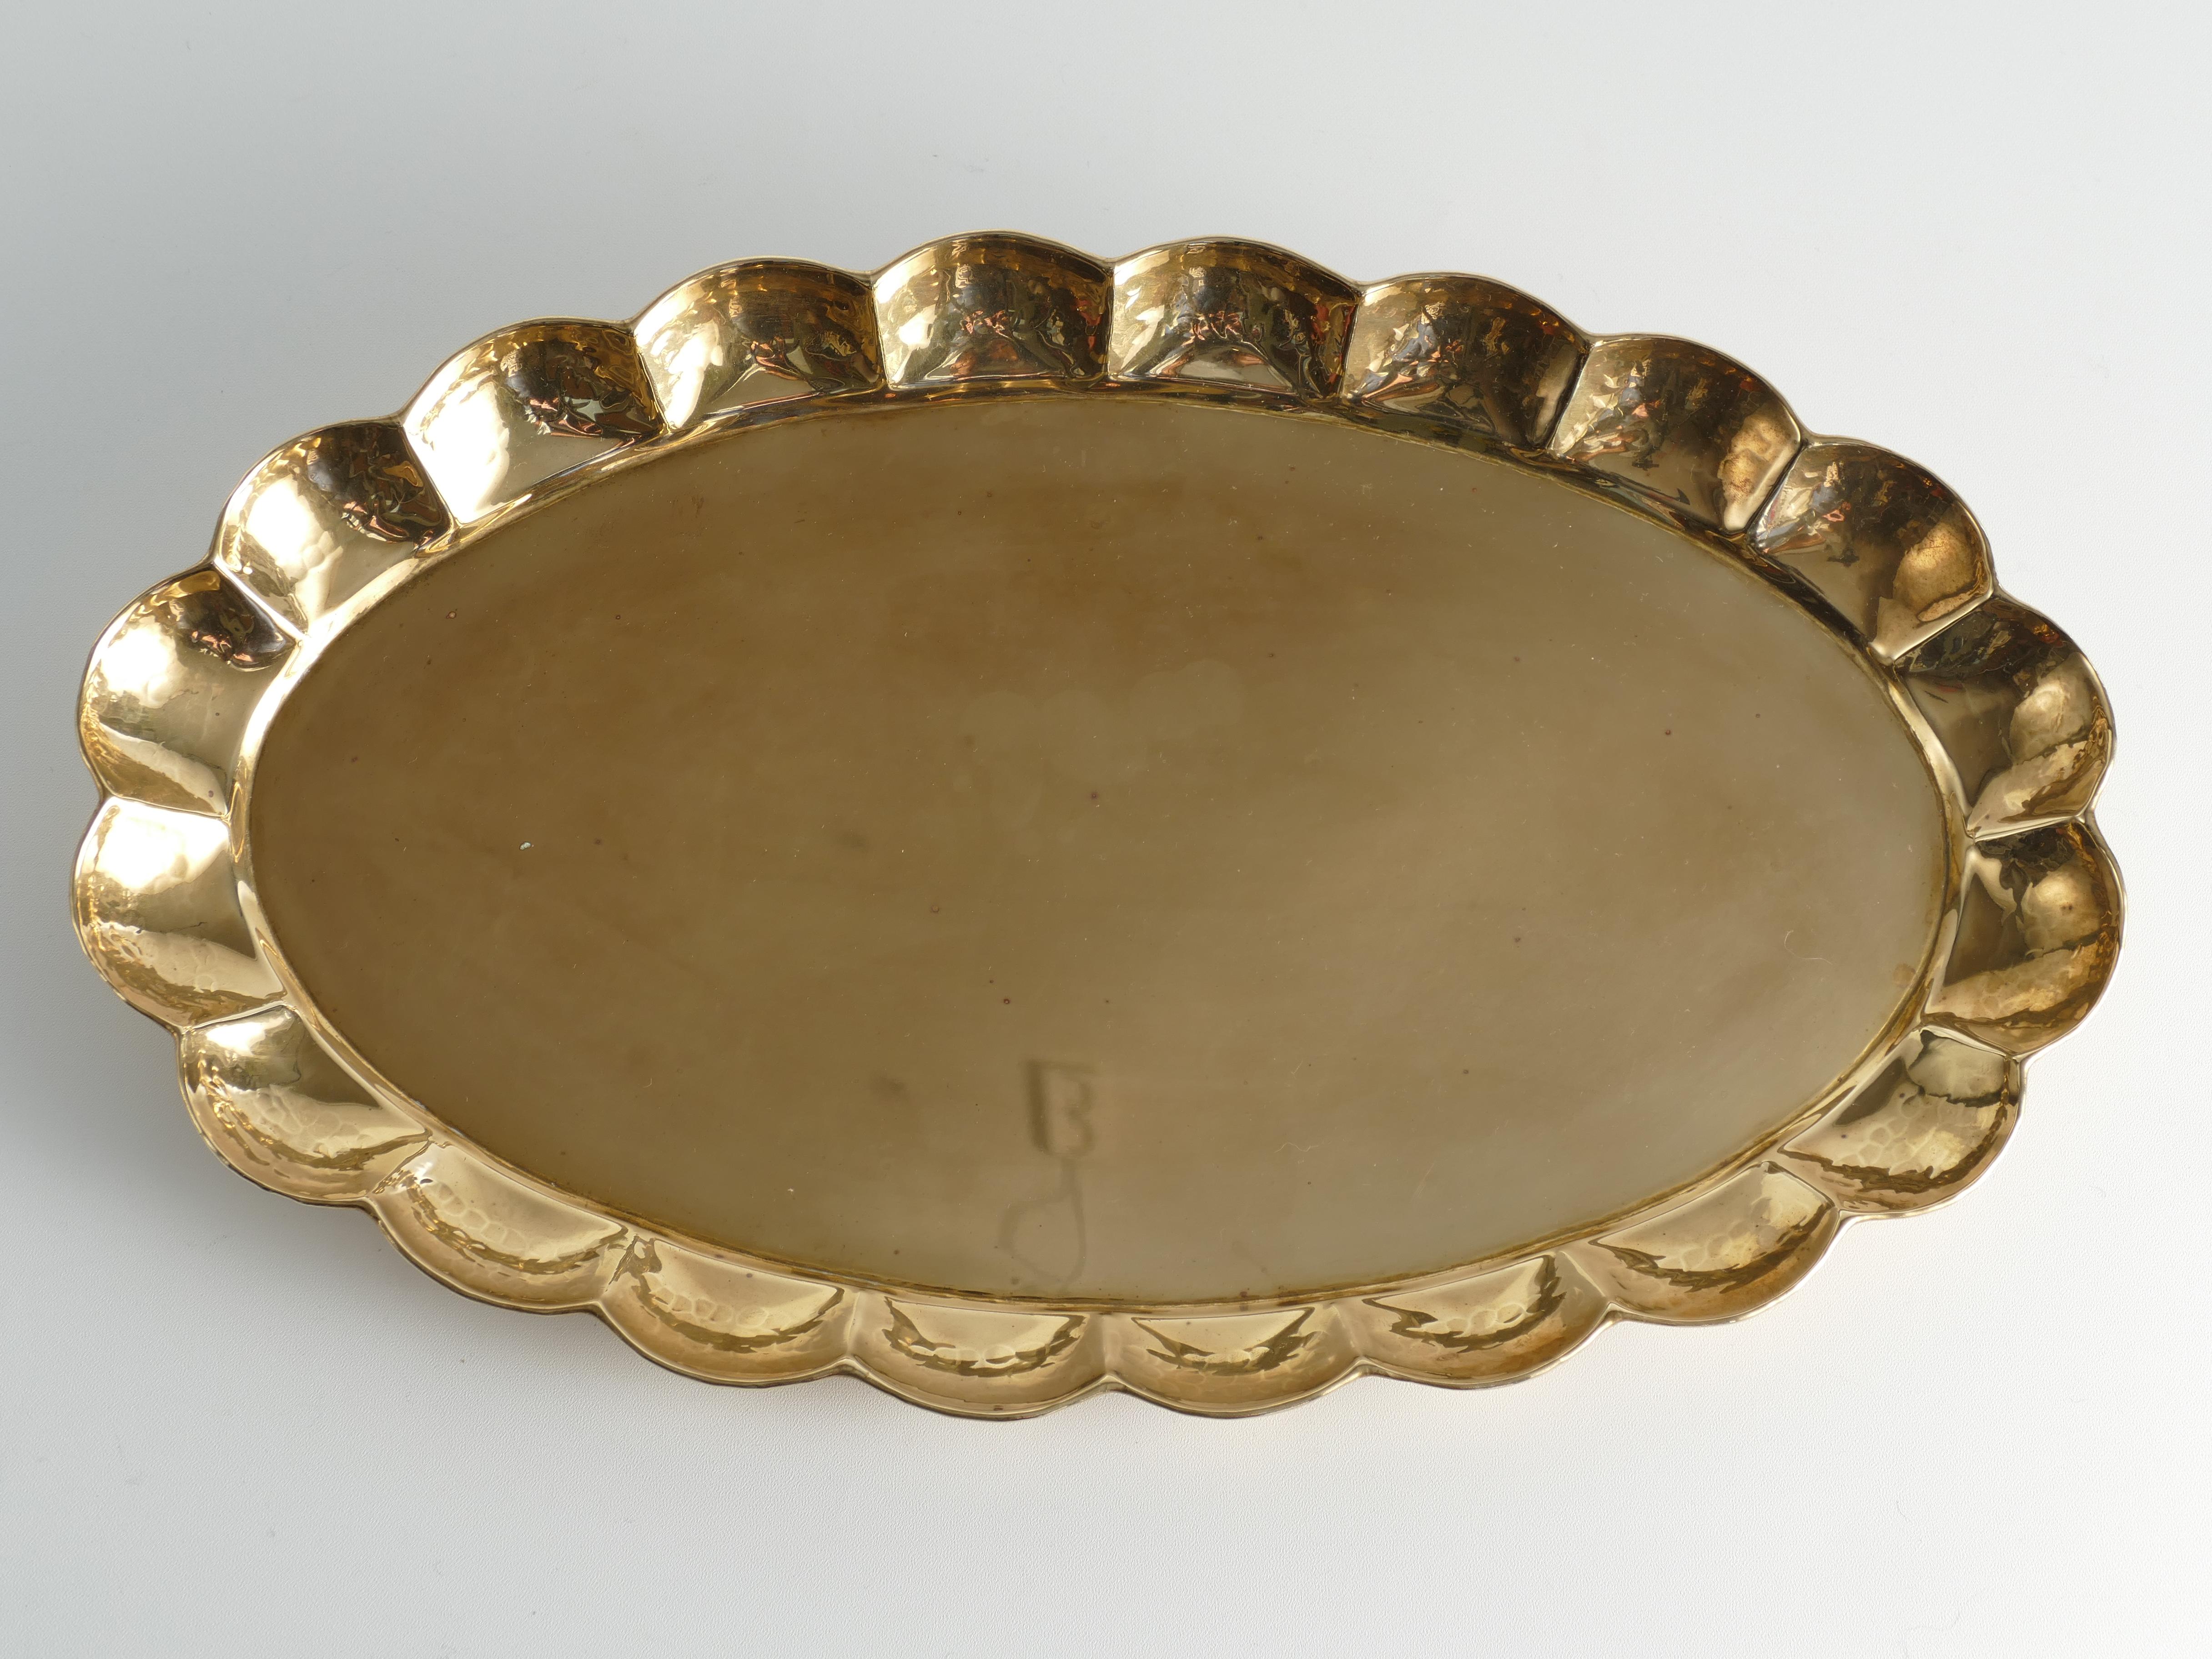 Meisterhaft gearbeitetes ovales Messing-Tablett im Art-Deco-Stil, entworfen von Arvid Johansson (1862-1923) und hergestellt in Karlstad Konstsmide, Schweden. Das Tablett hat eine ovale Form mit einem anmutig konturierten, handgehämmerten Rand.